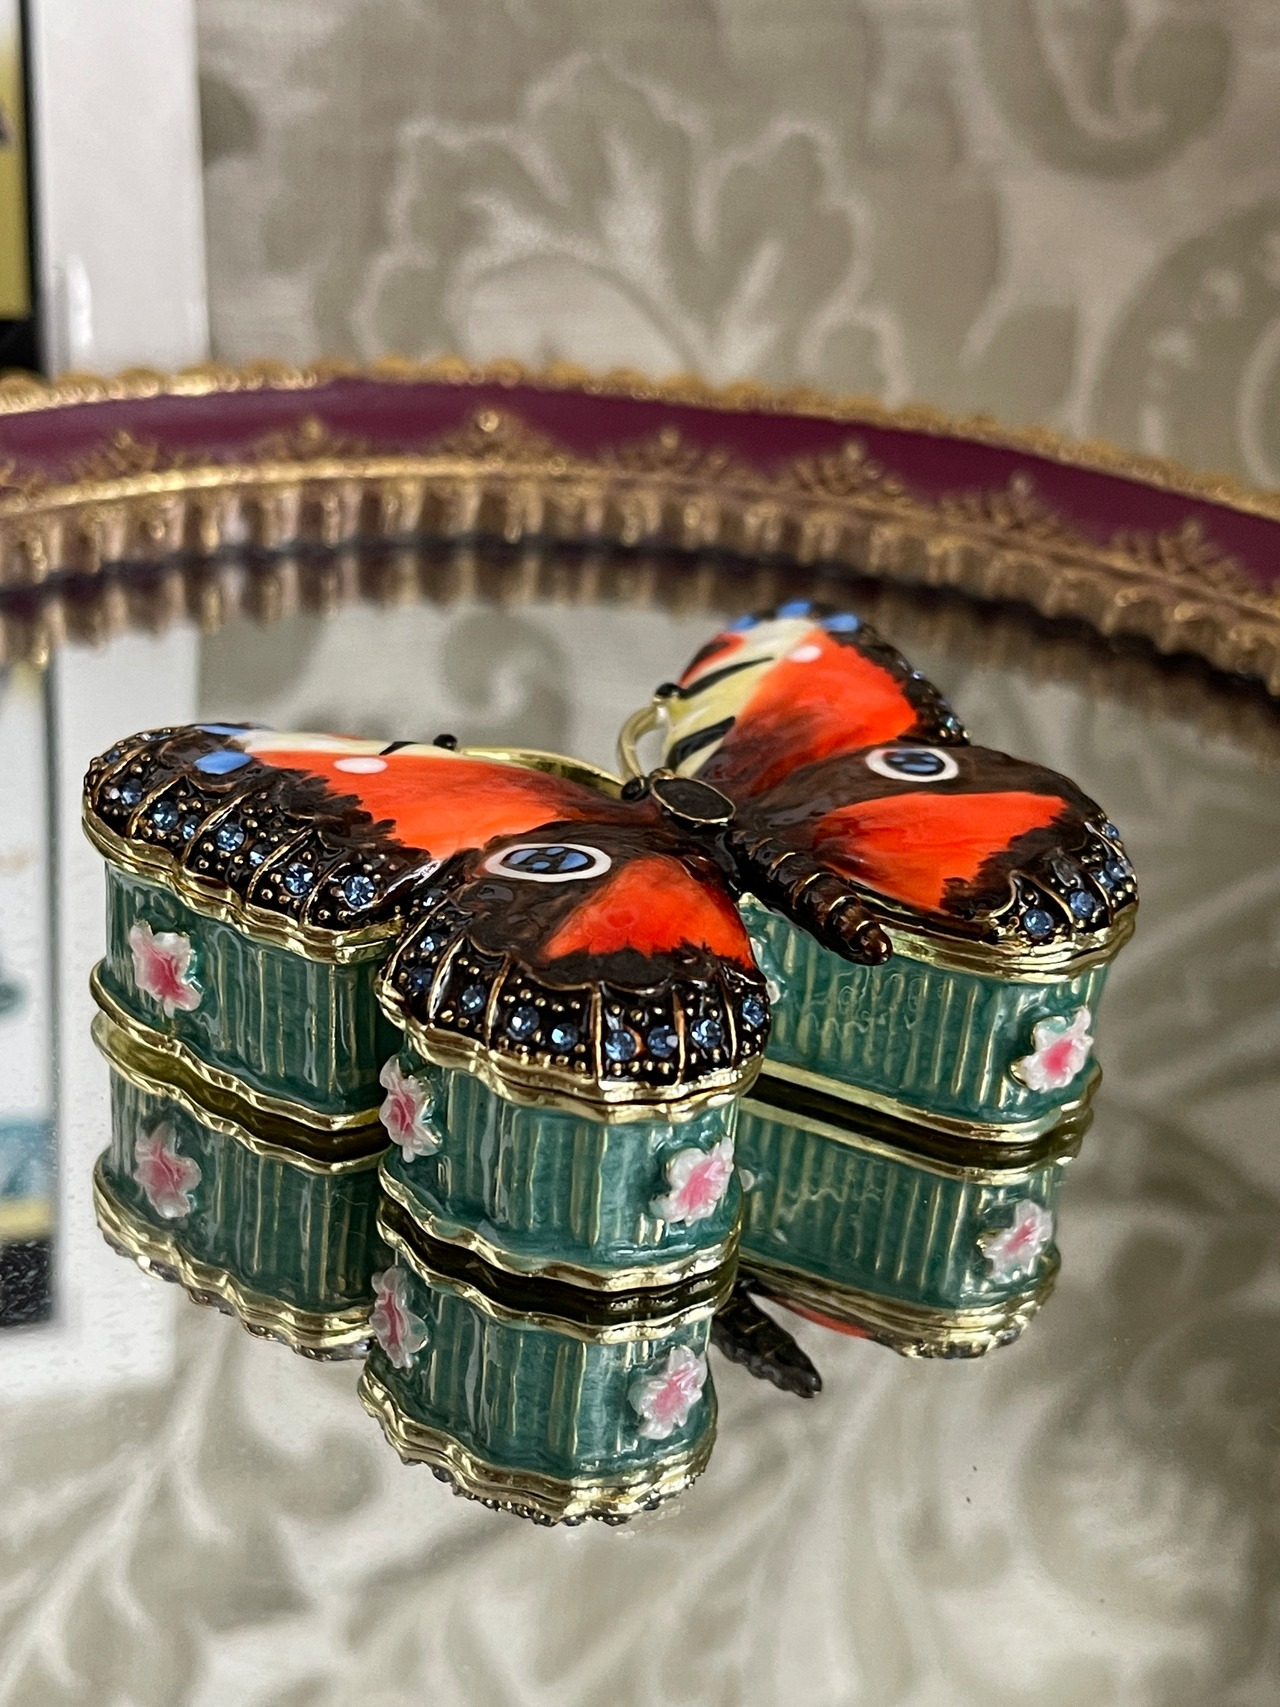 『バタフライ 蝶』 シークレットBOX 『隠された財宝の秘密 ARORA』イギリス製の画像03